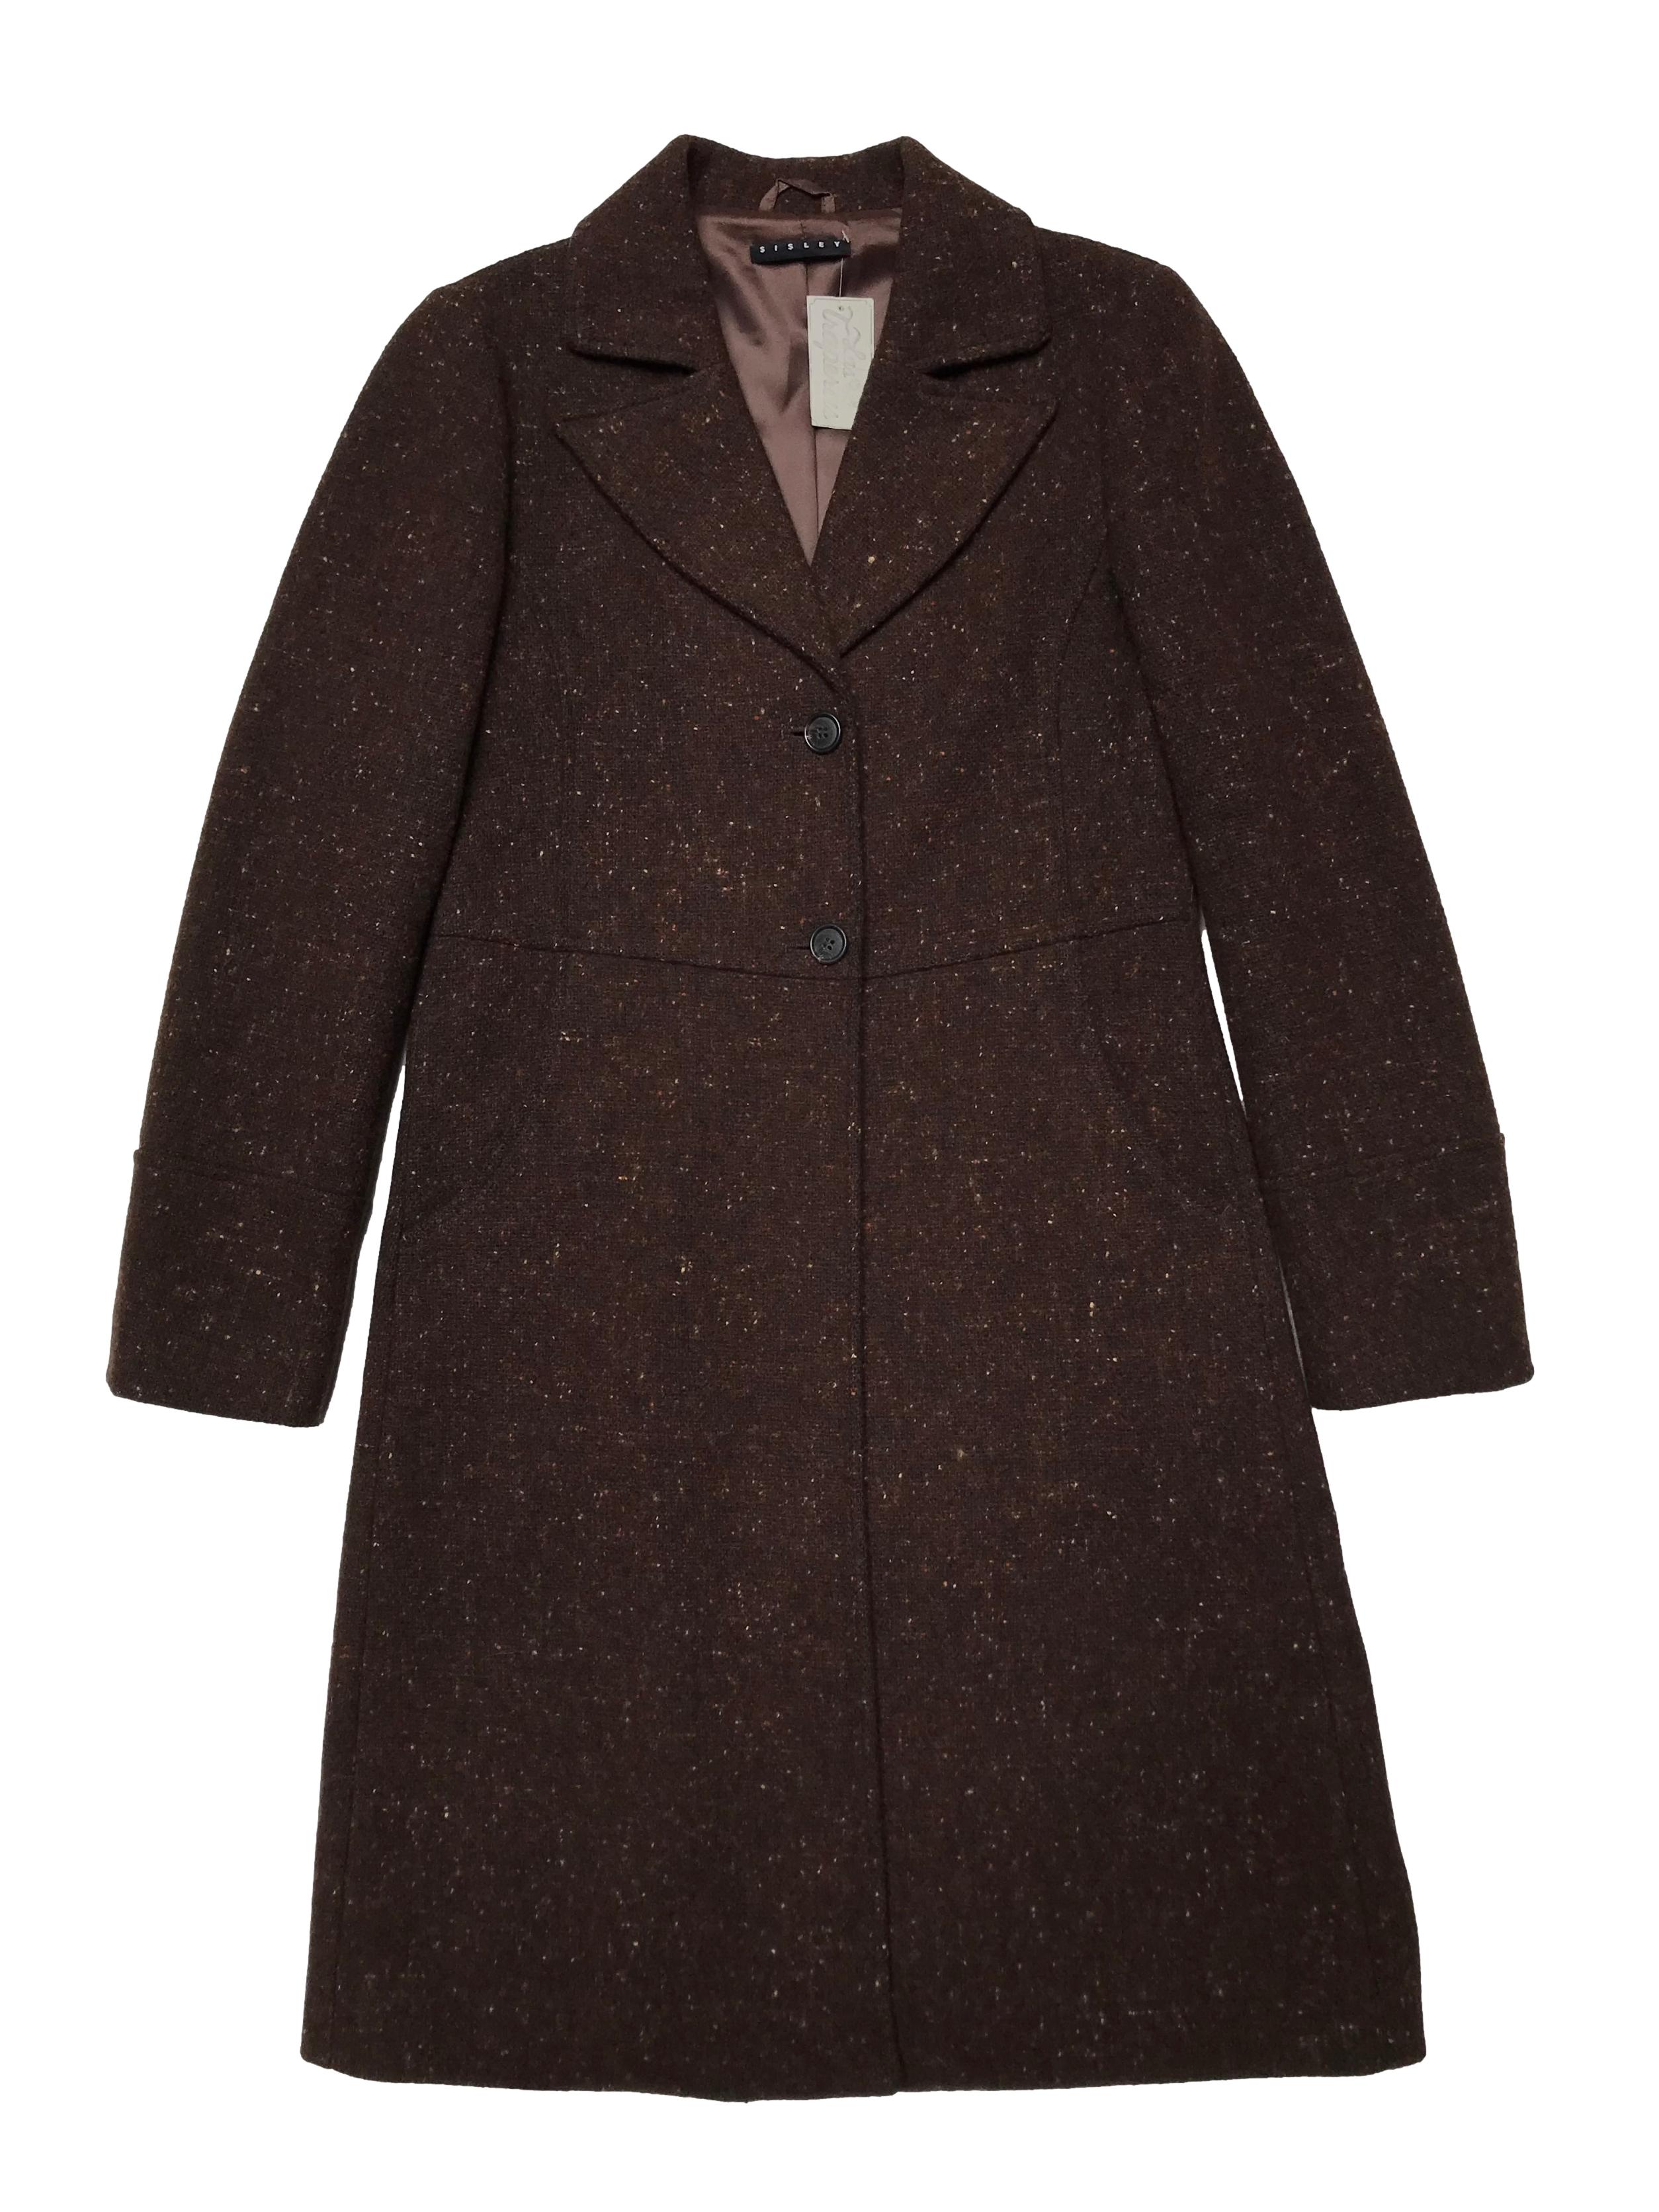 Abrigo Sisley marrón jaspeado, tela tipo lana compacta, forrado, tiene solapas, botones y bolsillos delanteros. Ancho 92cm Largo 95cm. Precio original S/ 700